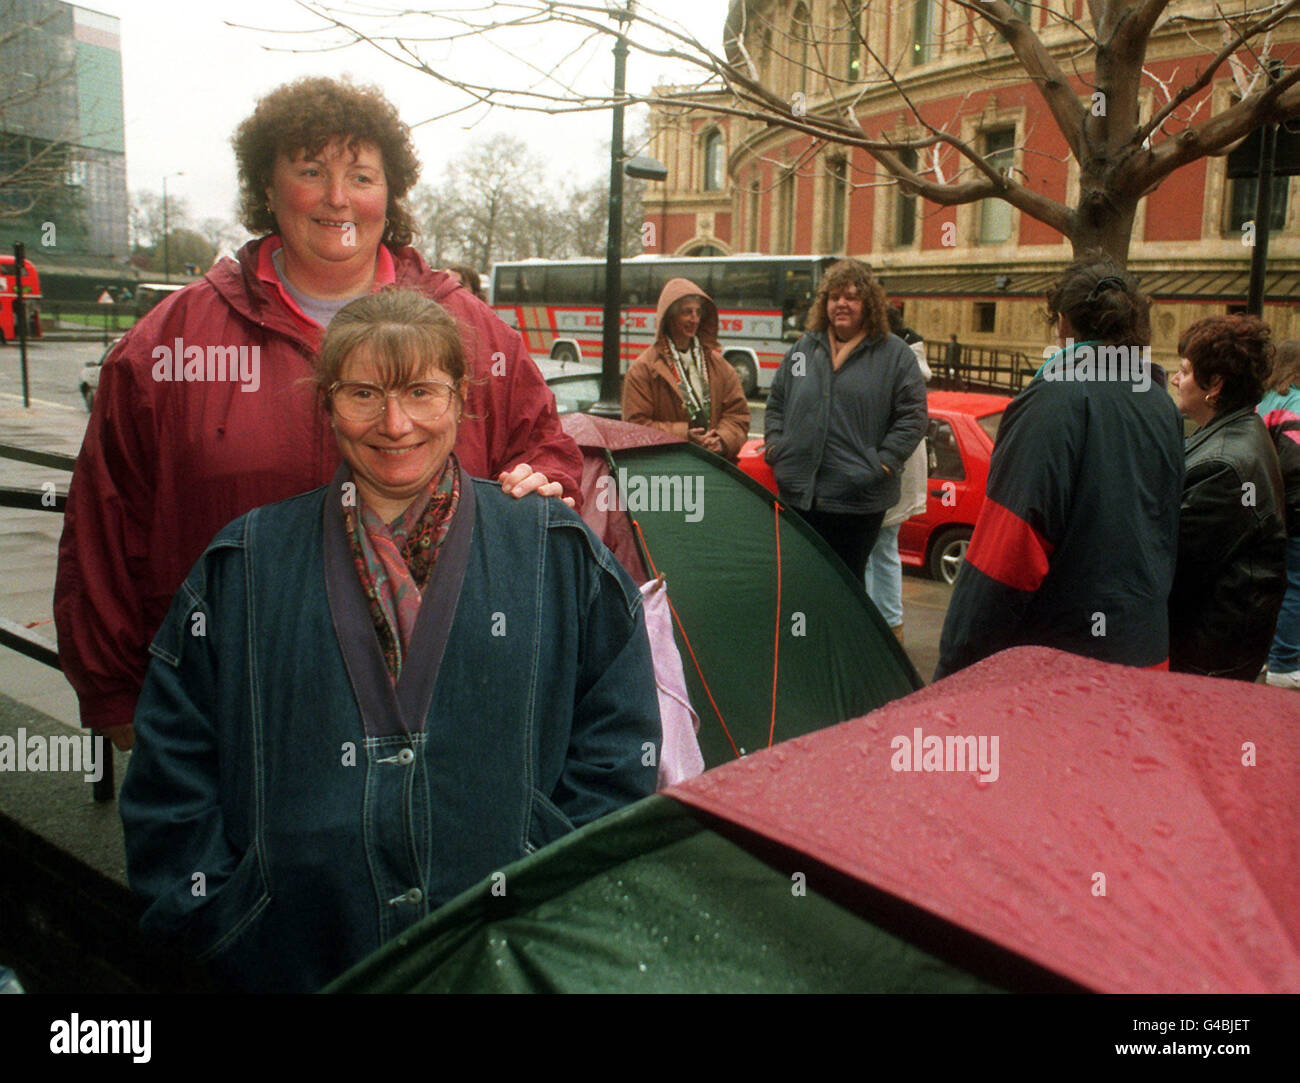 Shirley (fronte) e Linda Downton, dall'Isola di Wight, che ha iniziato la fila venerdì scorso, 20 marzo, per i biglietti per il prossimo tour di Cliff Richard. Foto di Neil Munns/PA. Foto Stock